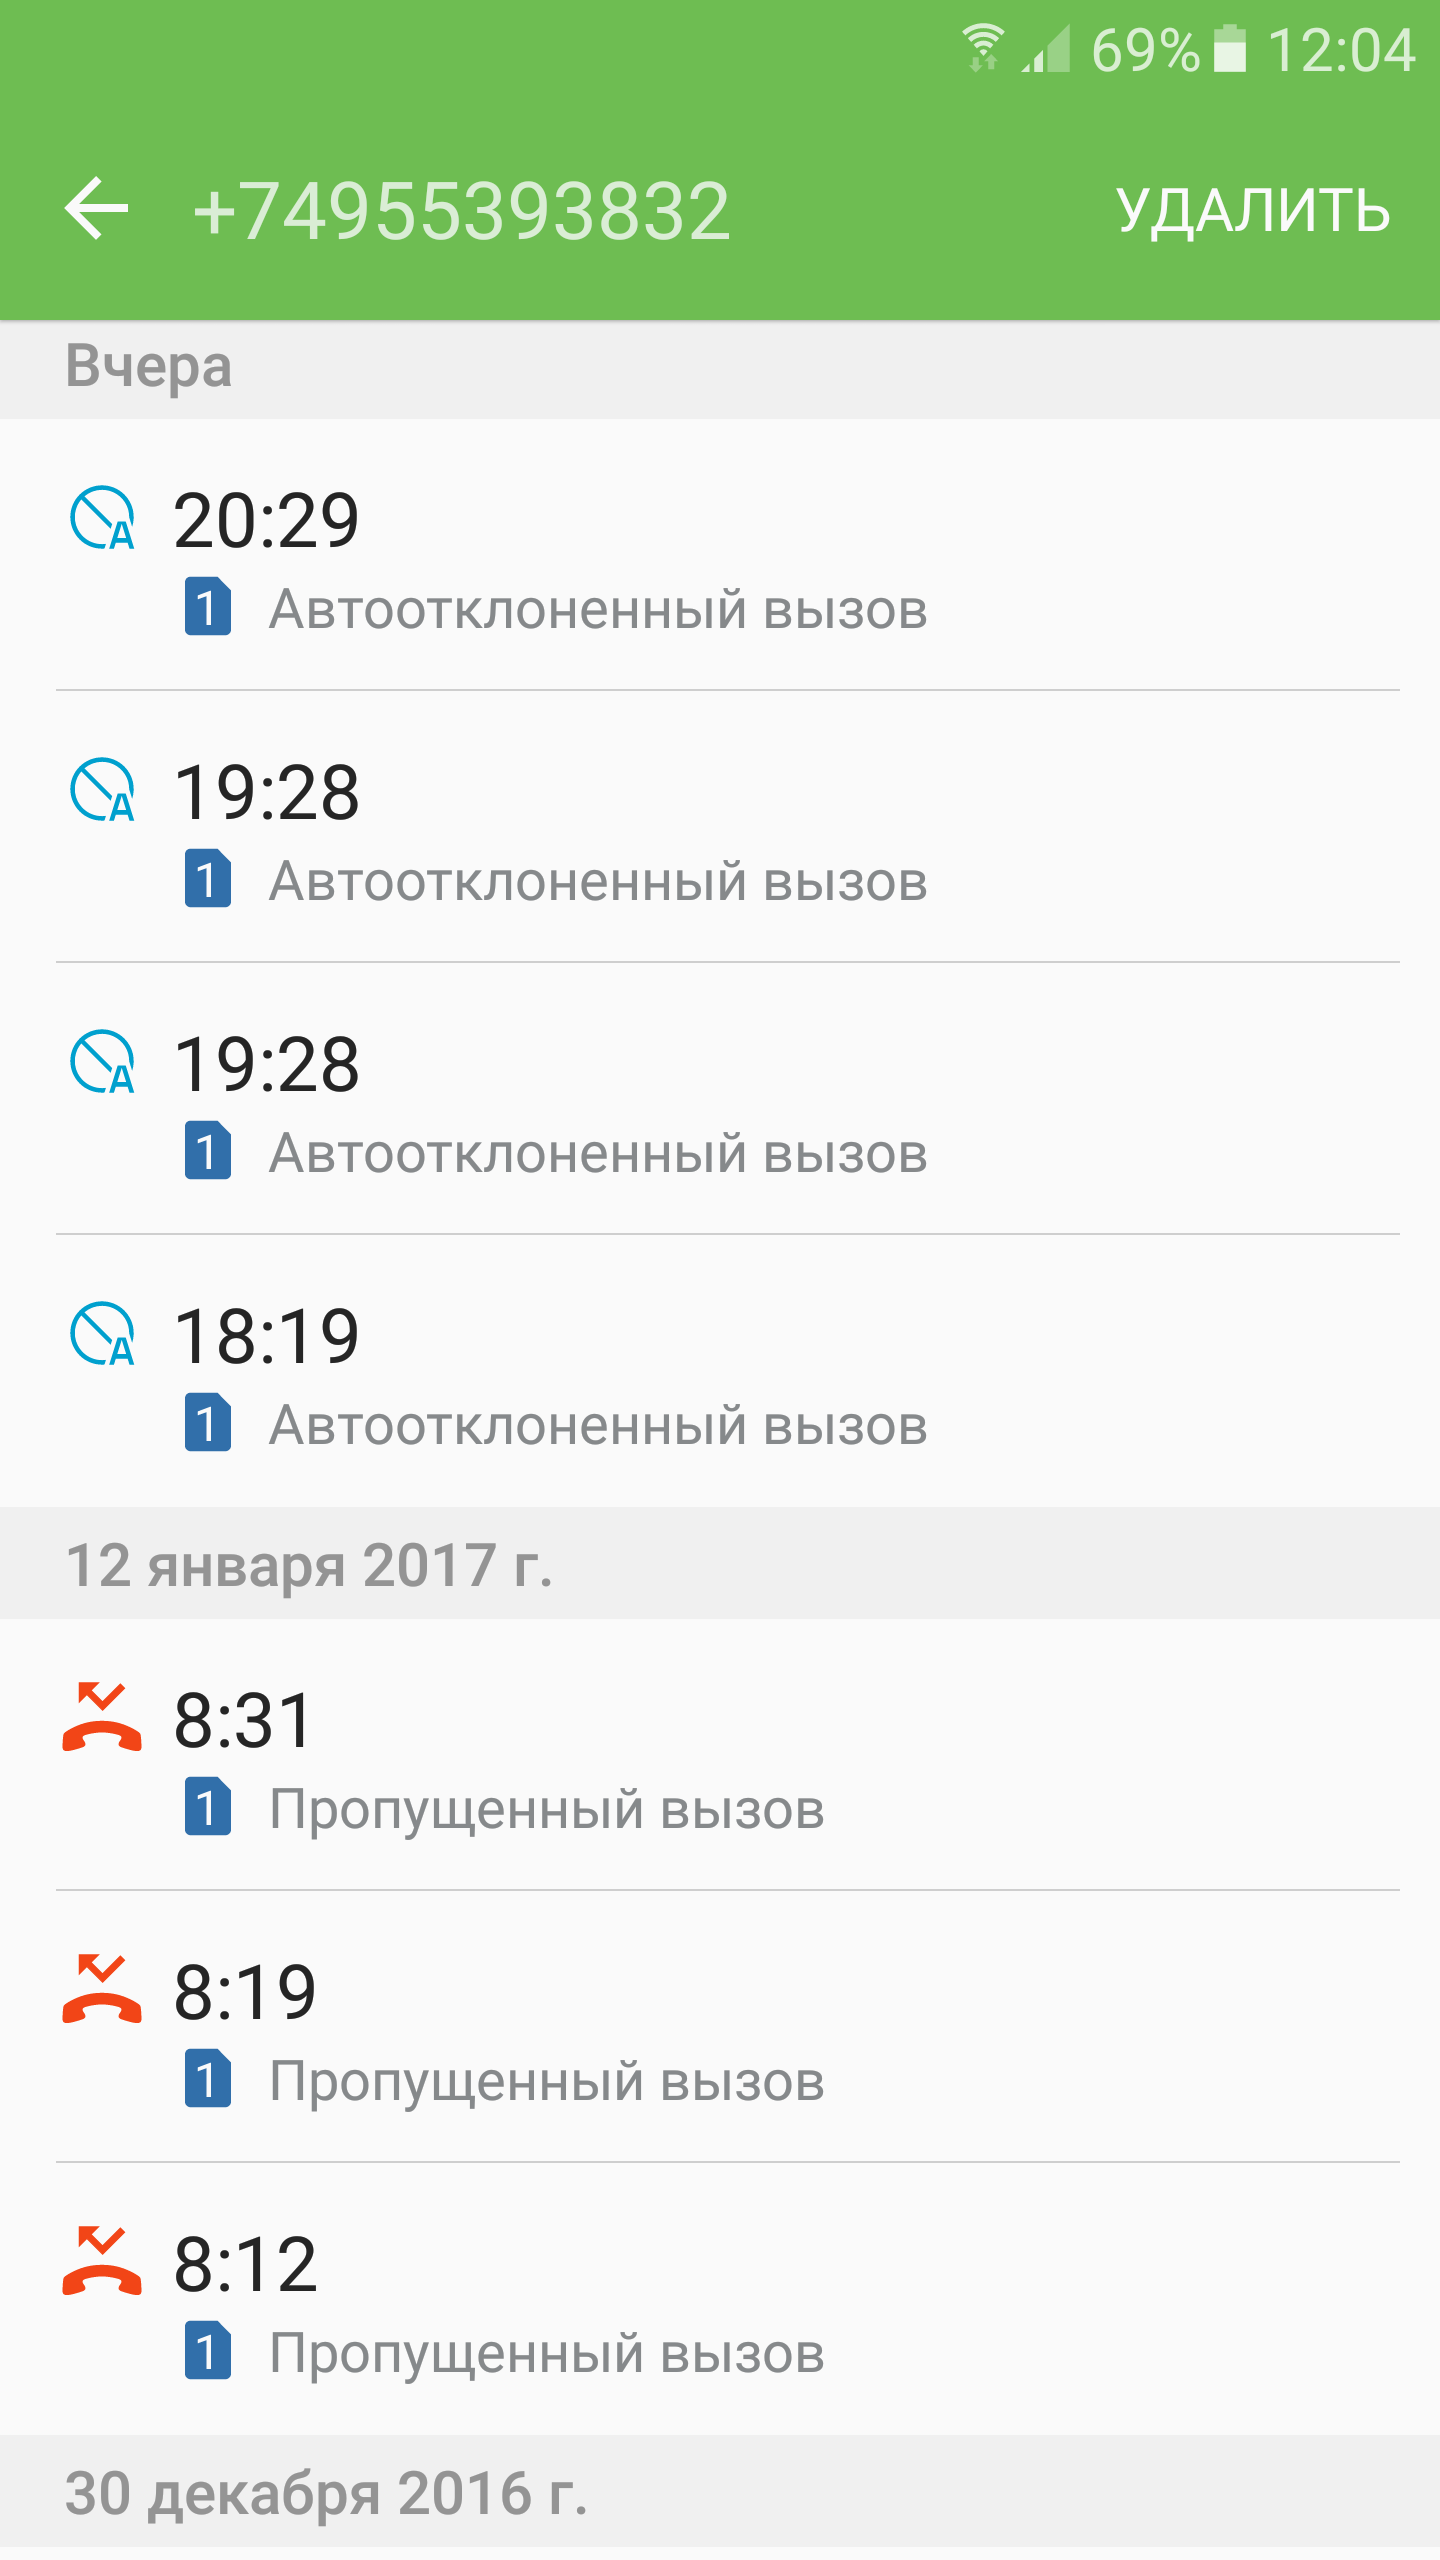 Саяногорск Инфо - screenshot_20170114-120419.png, Скачано: 551